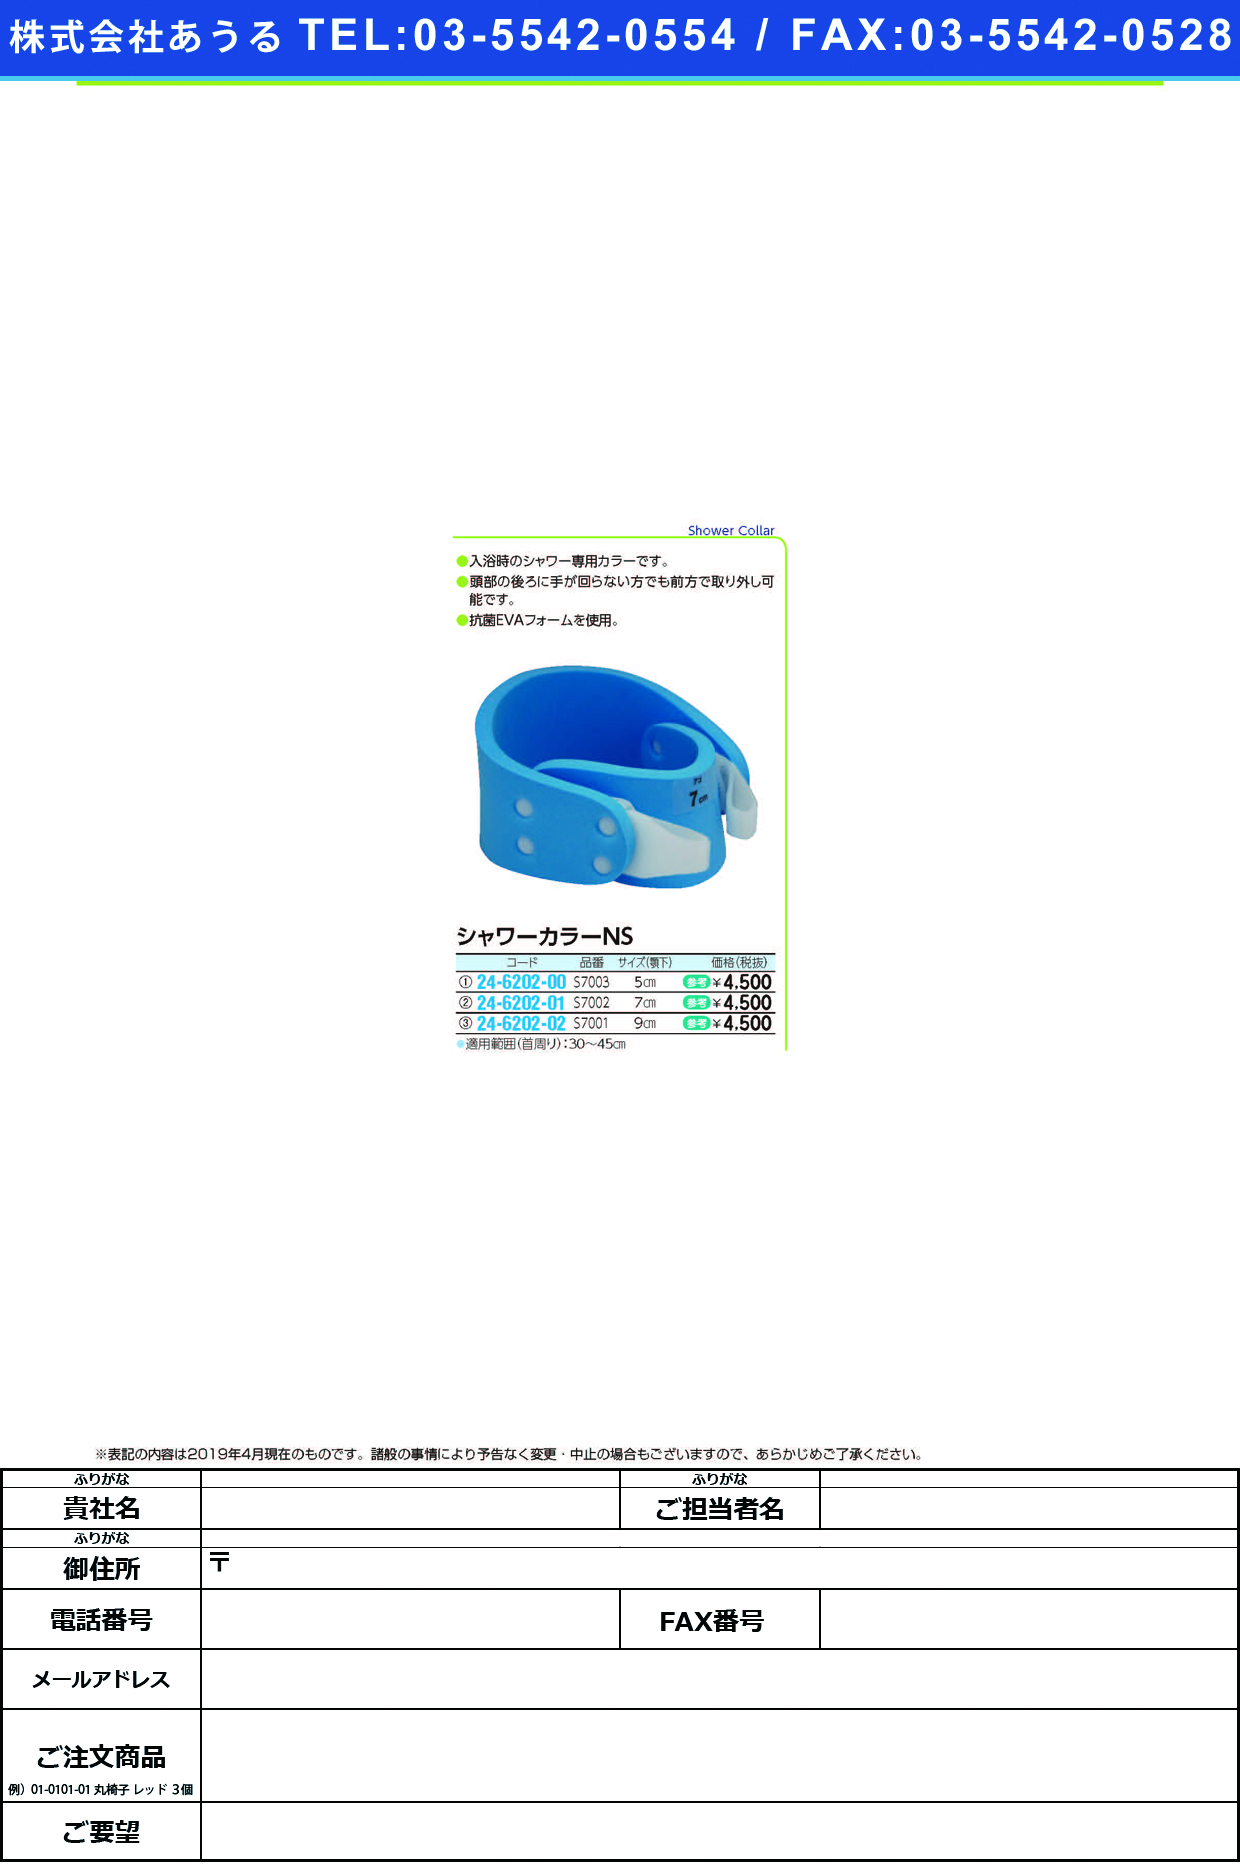 (24-6202-01)シャワーカラーＮＳ S7002(ｱｺﾞｼﾀｽﾝﾎﾟｳ7CM) ｼｬﾜｰｶﾗｰNS【1個単位】【2019年カタログ商品】